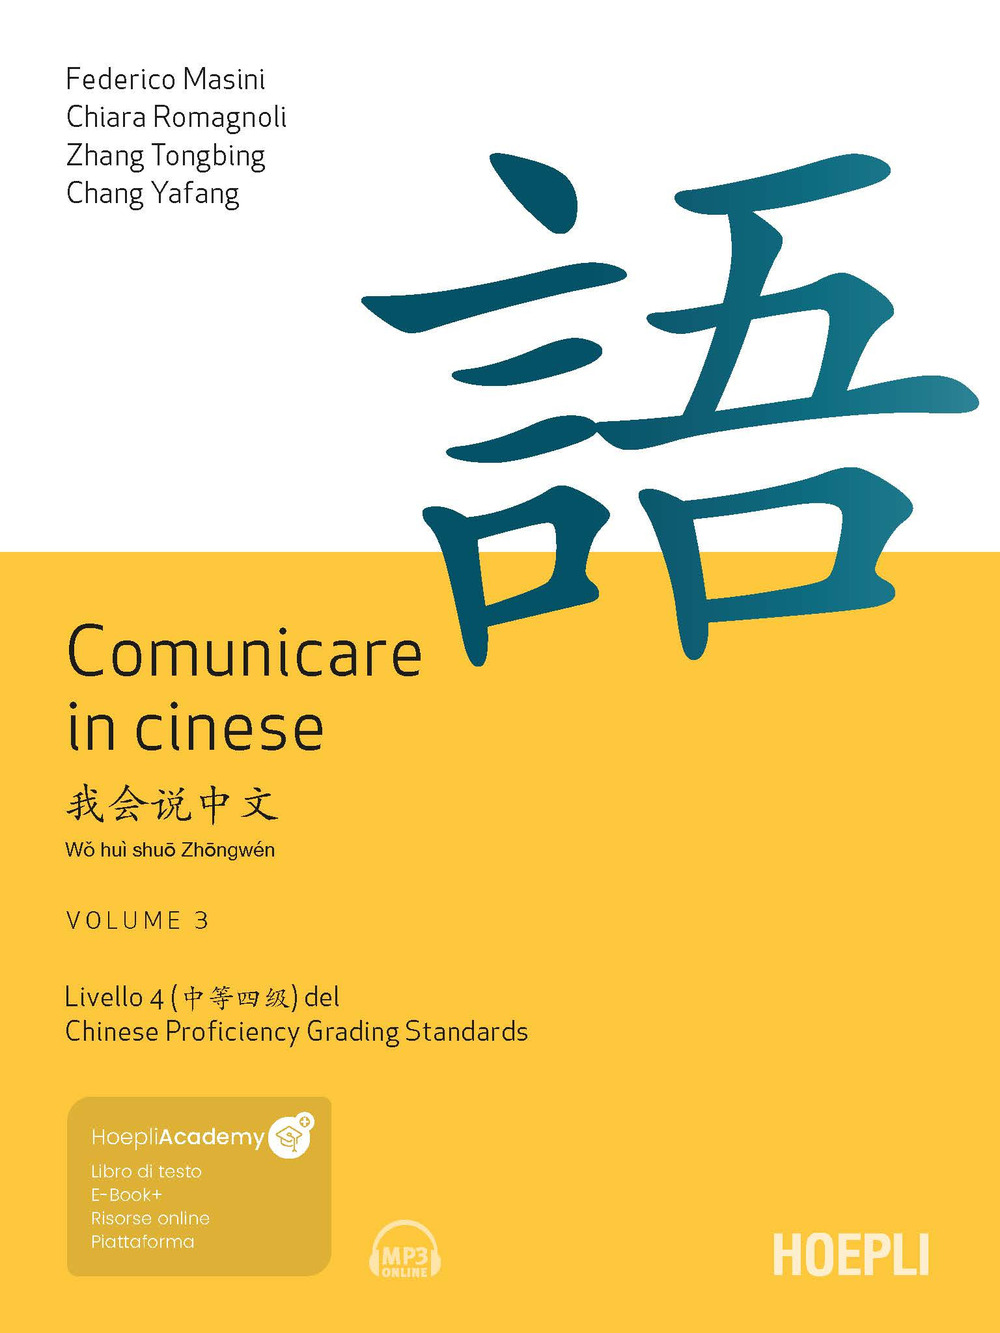 Libri Federico Masini Chiara Romagnoli Zhang Tongbing - Comunicare In Cinese. Con File Audio Online Vol 03 NUOVO SIGILLATO EDIZIONE DEL SUBITO DISPONIBILE